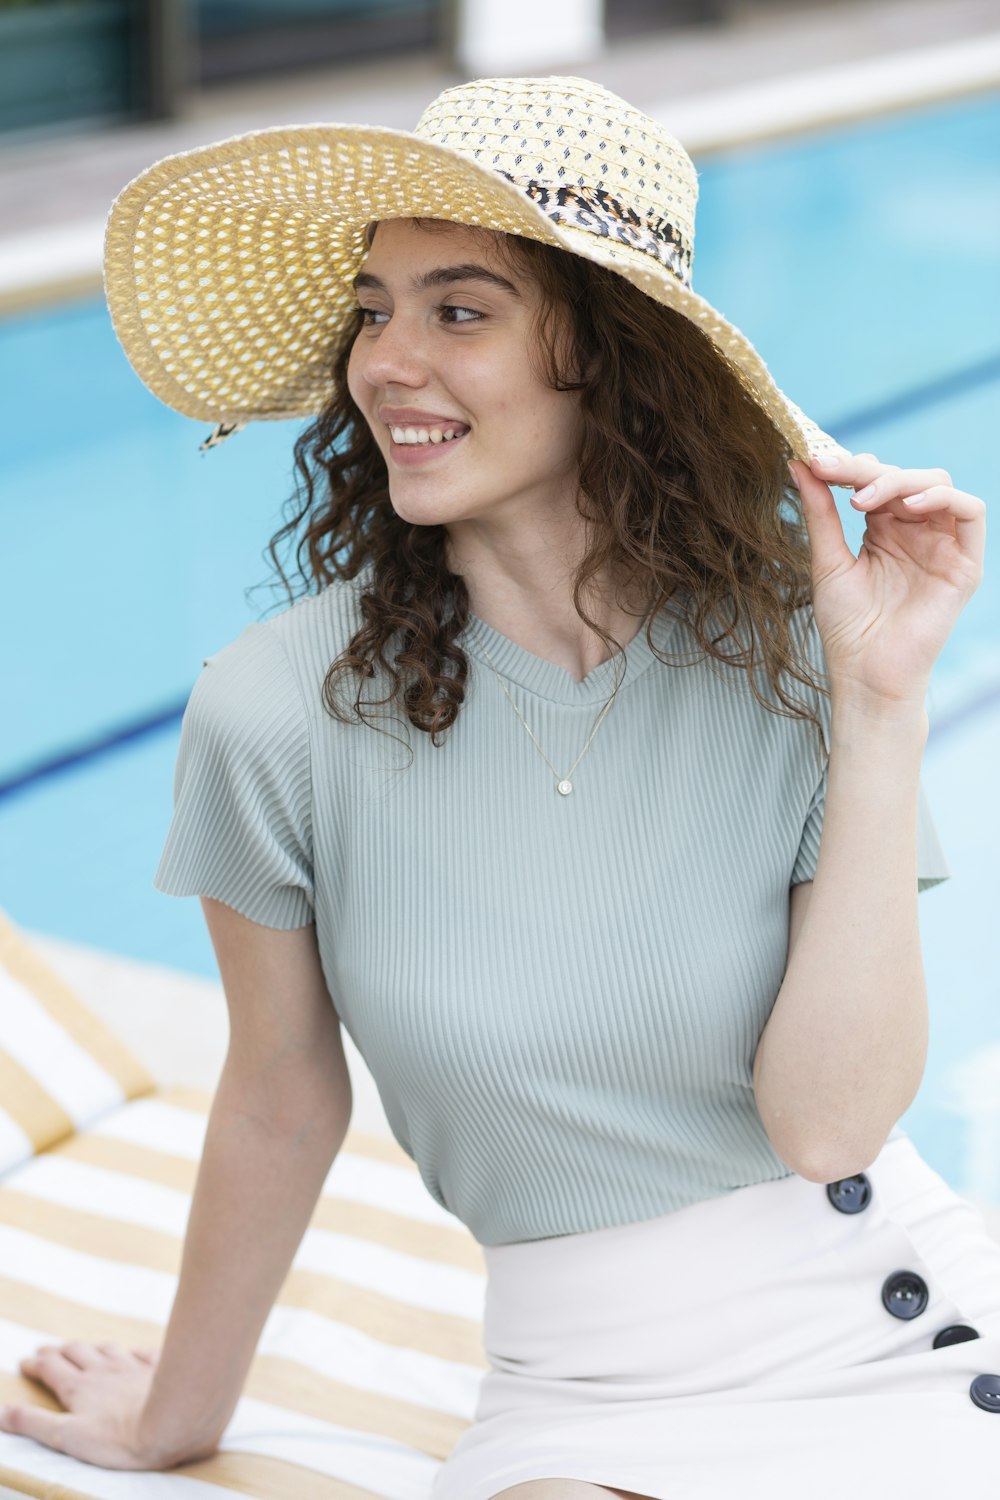 mulher no vestido listrado branco e azul que usa o chapéu de palha marrom